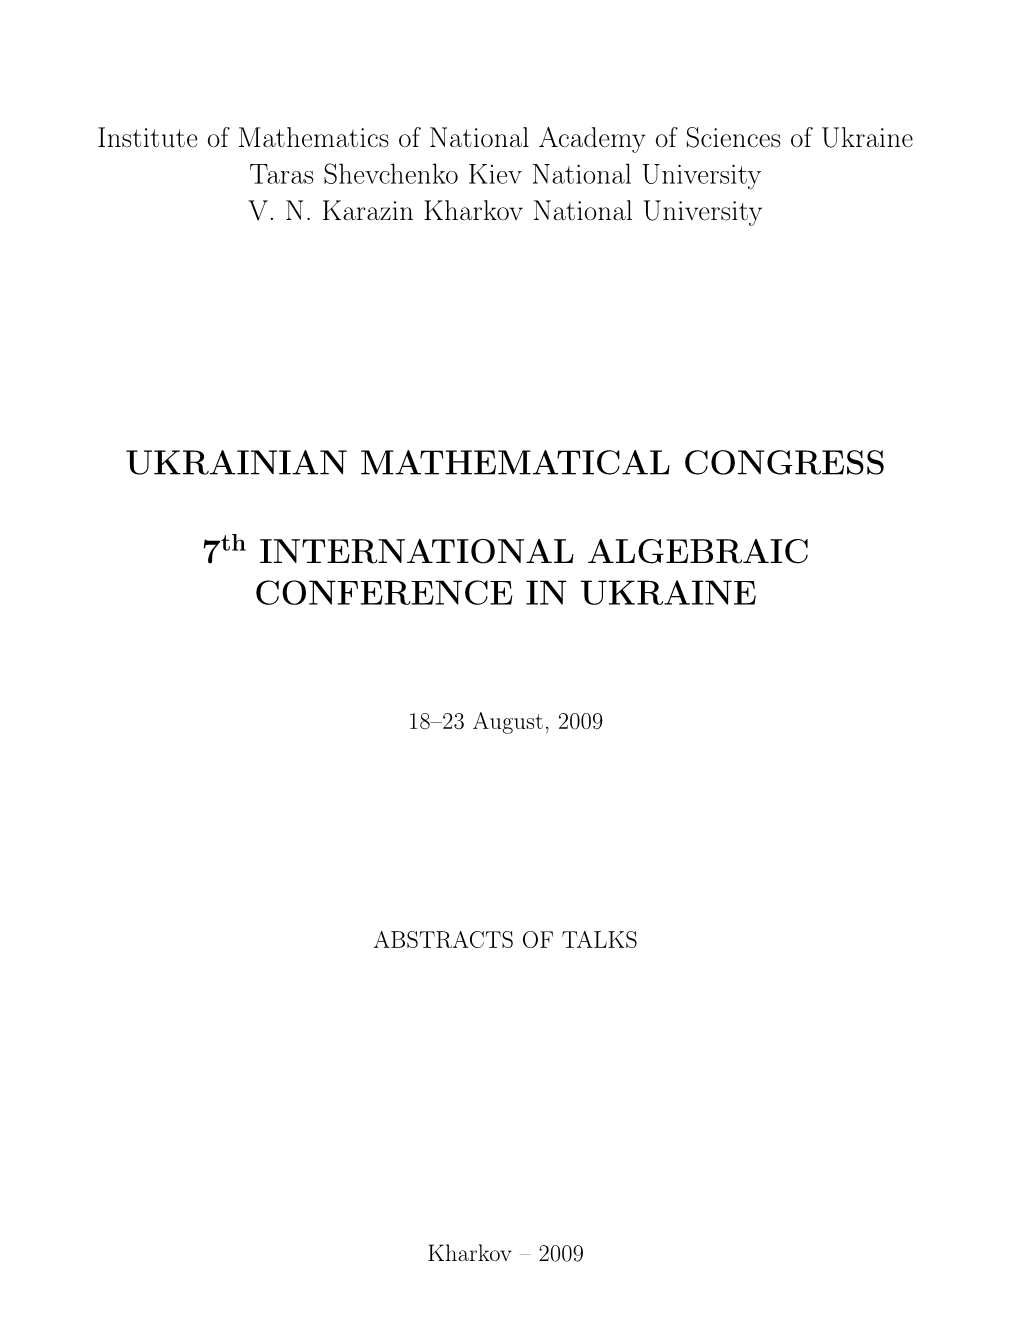 Ukrainian Mathematical Congress 7 International